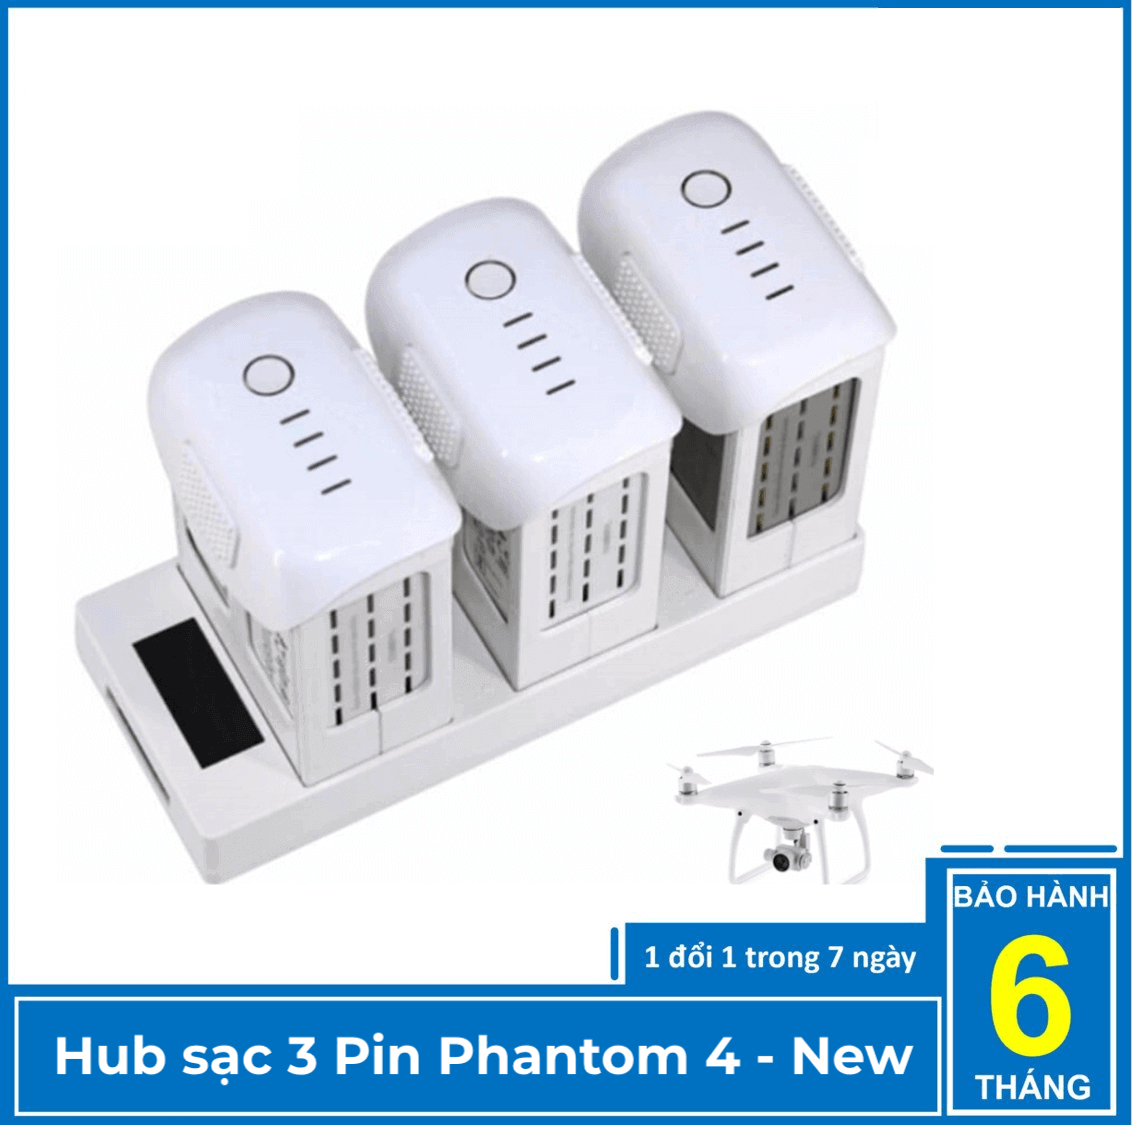 Hub sạc 3 pin Phantom 4 – New version - Hành chính hãng Yxtech